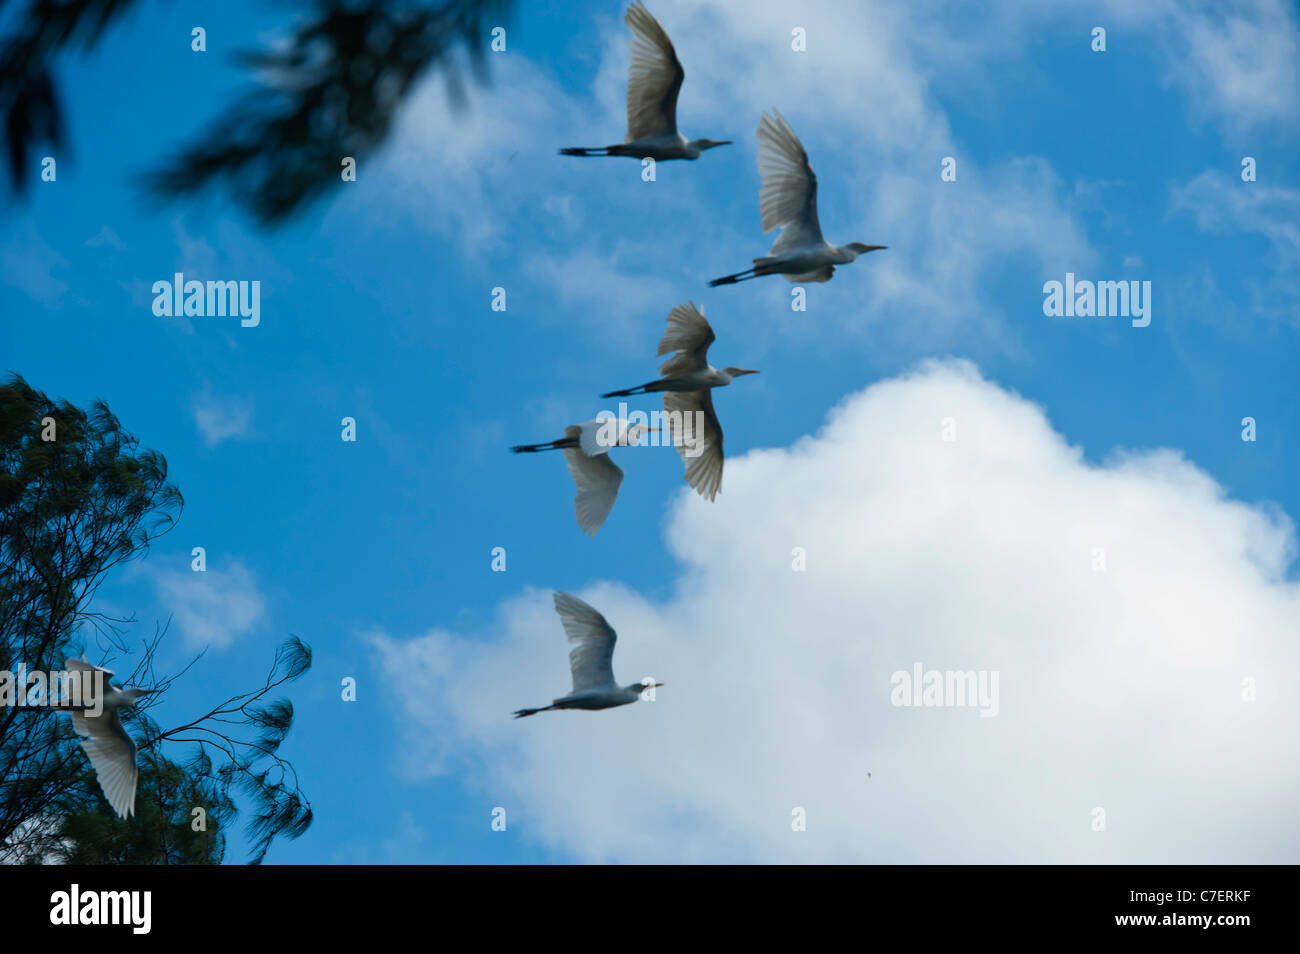 Comune,l'equilibrio in garzette fluttuante nel cielo blu contro il bianco delle nuvole. Foto Stock